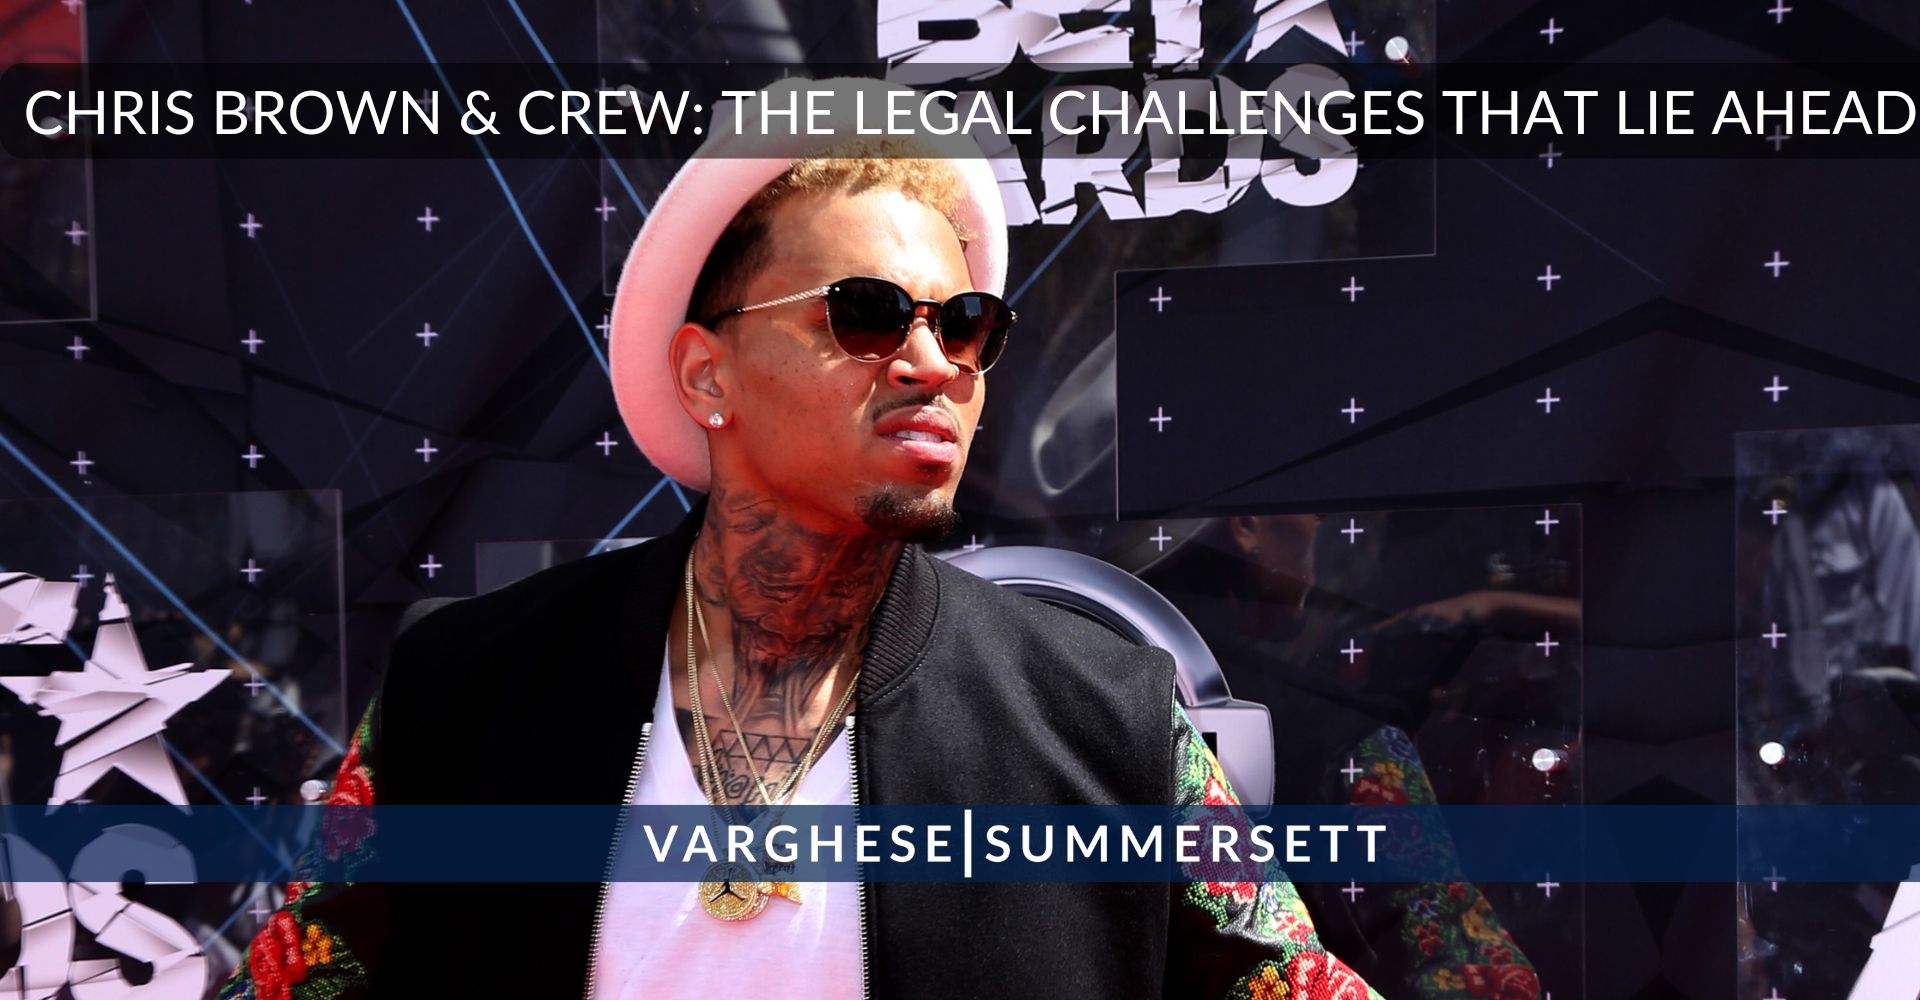 Chris Brown acusado de agresión: Qué retos legales le esperan